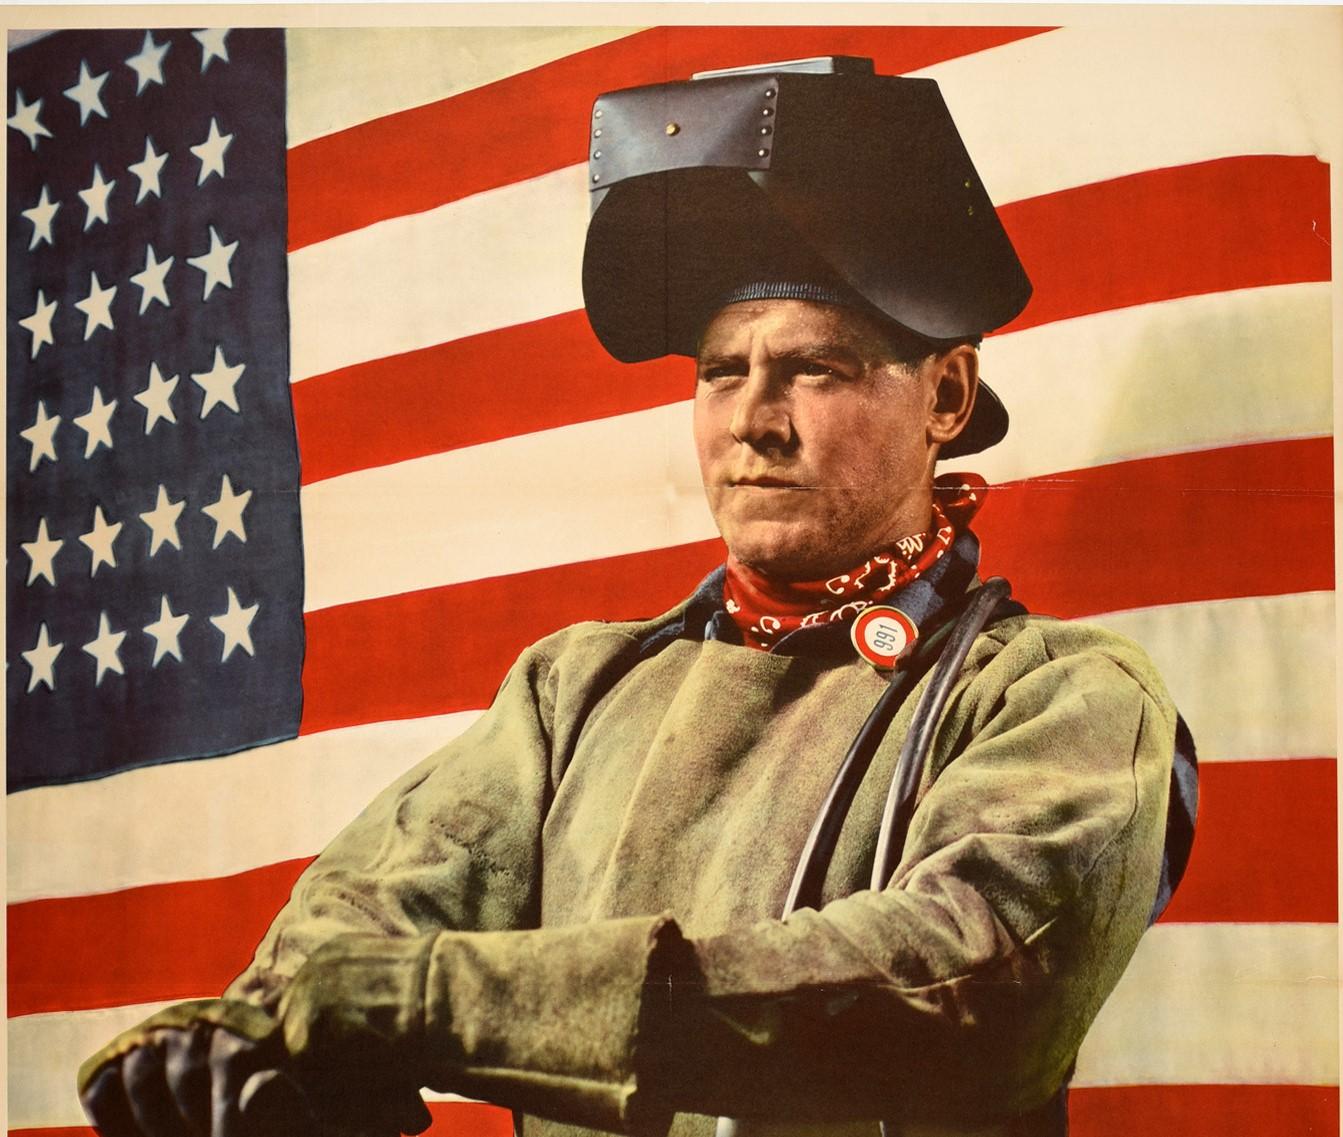 Affiche américaine originale de la Seconde Guerre mondiale - Free Labor Will Win - publiée par le gouvernement américain et le War Production Board pour rappeler que les ennemis fascistes utilisaient l'esclavage pour leur effort de guerre (pendant